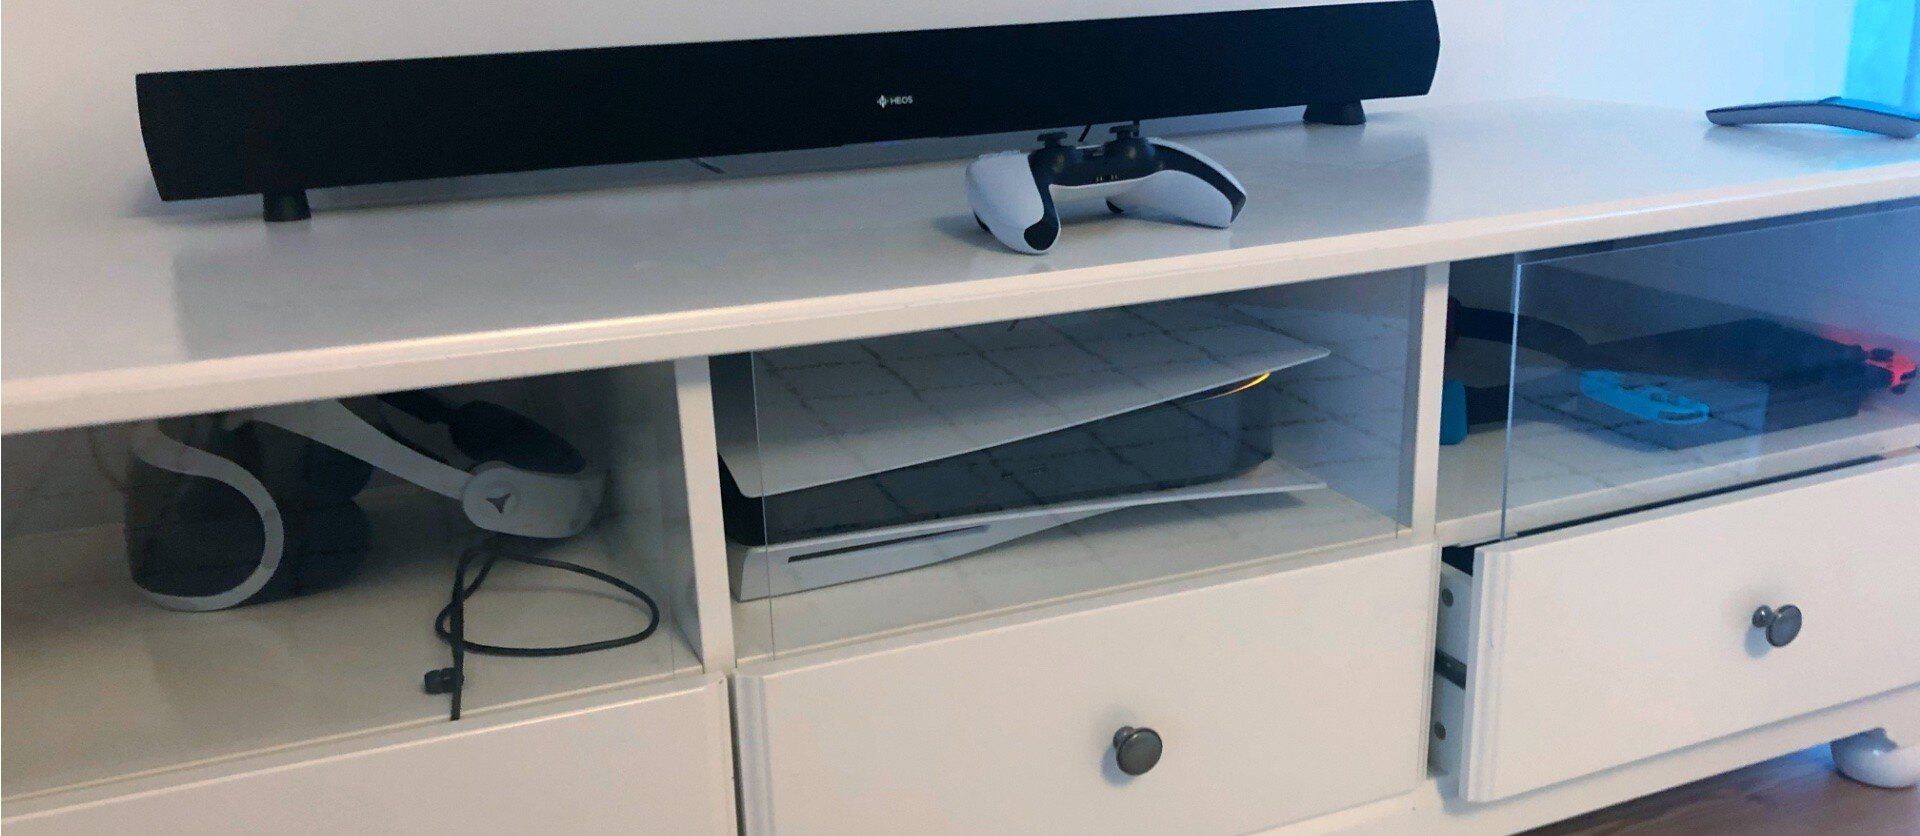 Die PlayStation 5 im IKEA Liantorp Fernsehschrank.